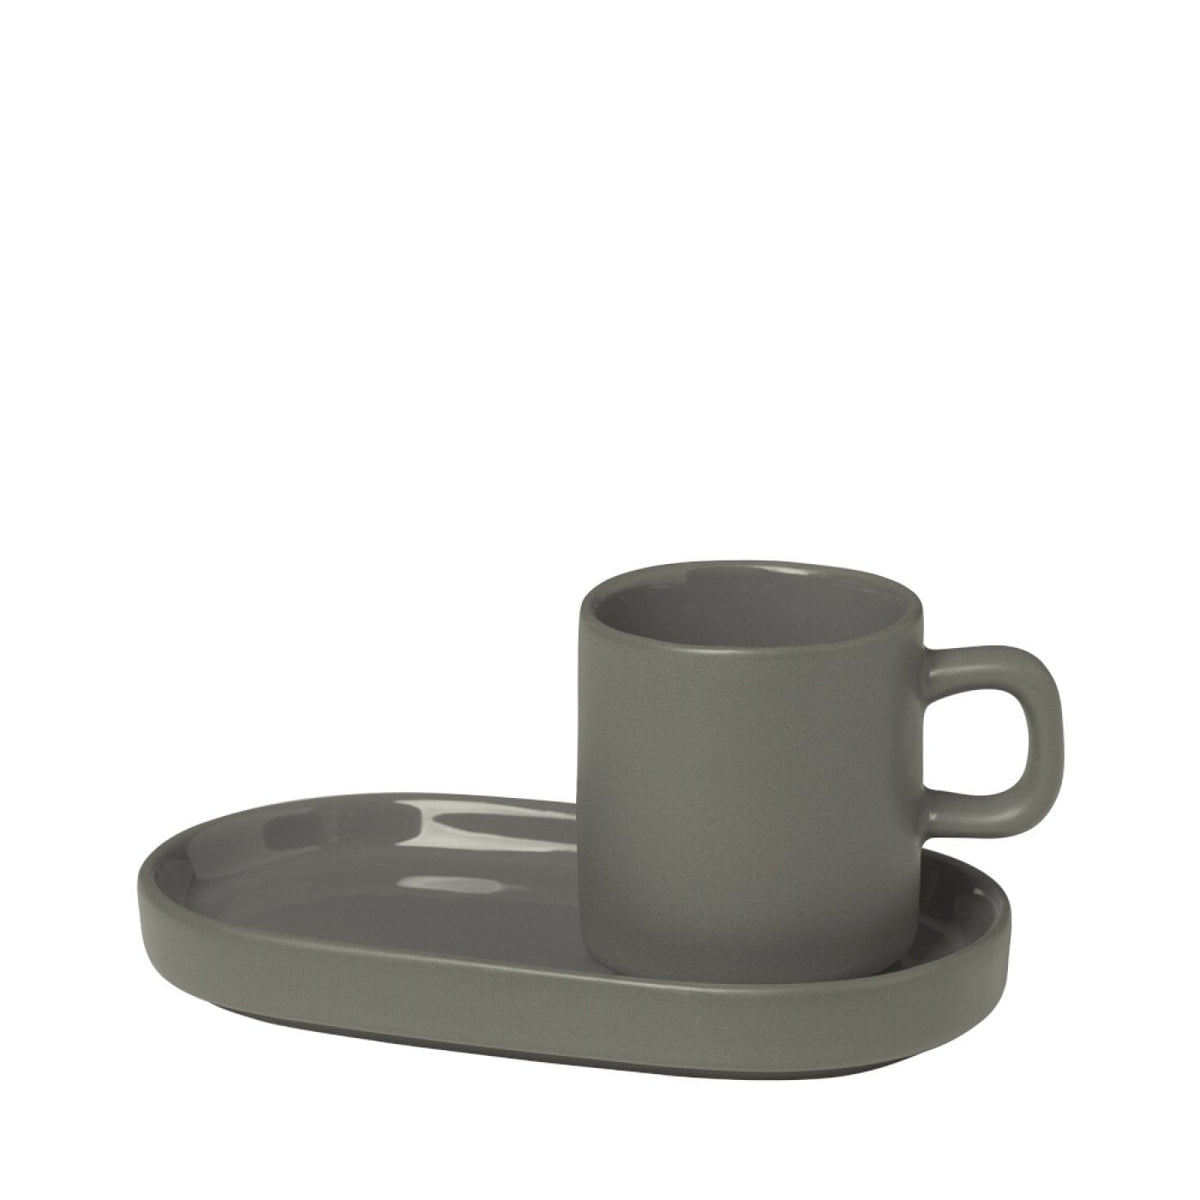 Ceramic espresso cup and plate Shelves